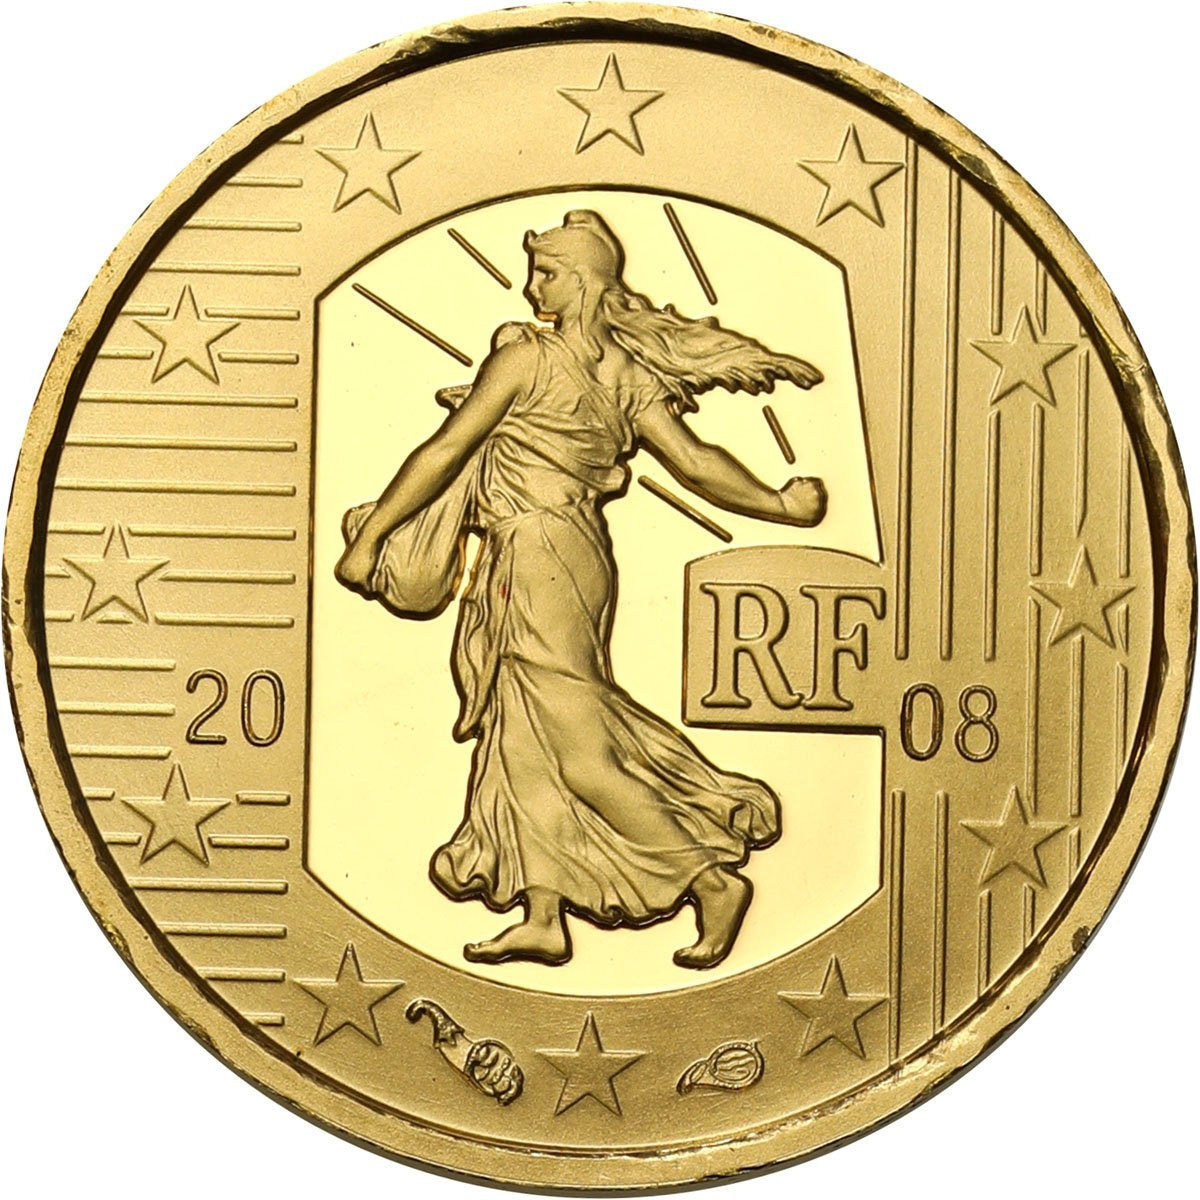 Francja. 5 euro 2008 Lourdes - 1/25 uncji złota